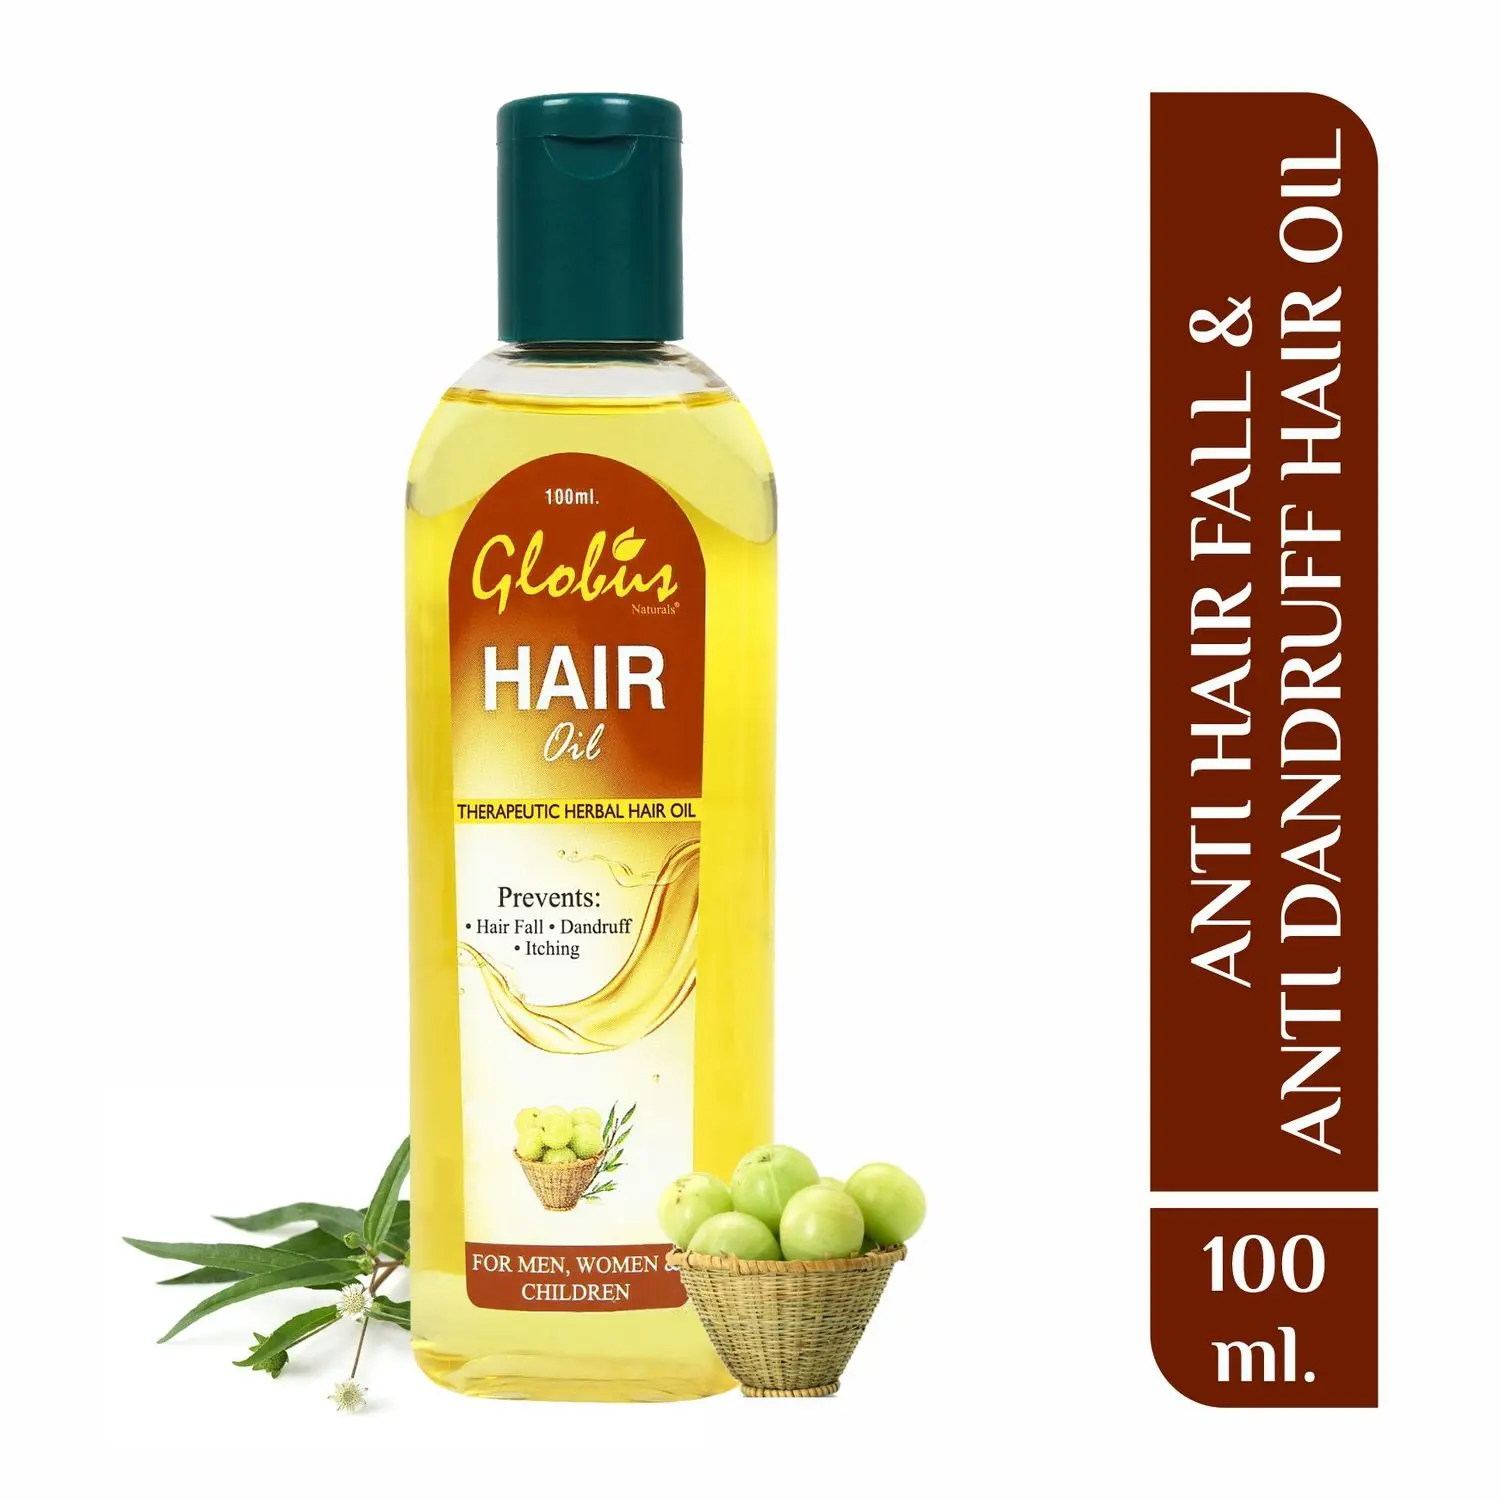 Globus Anti- Hair Fall & Anti-Dandruff Hair Oil (100 ml)